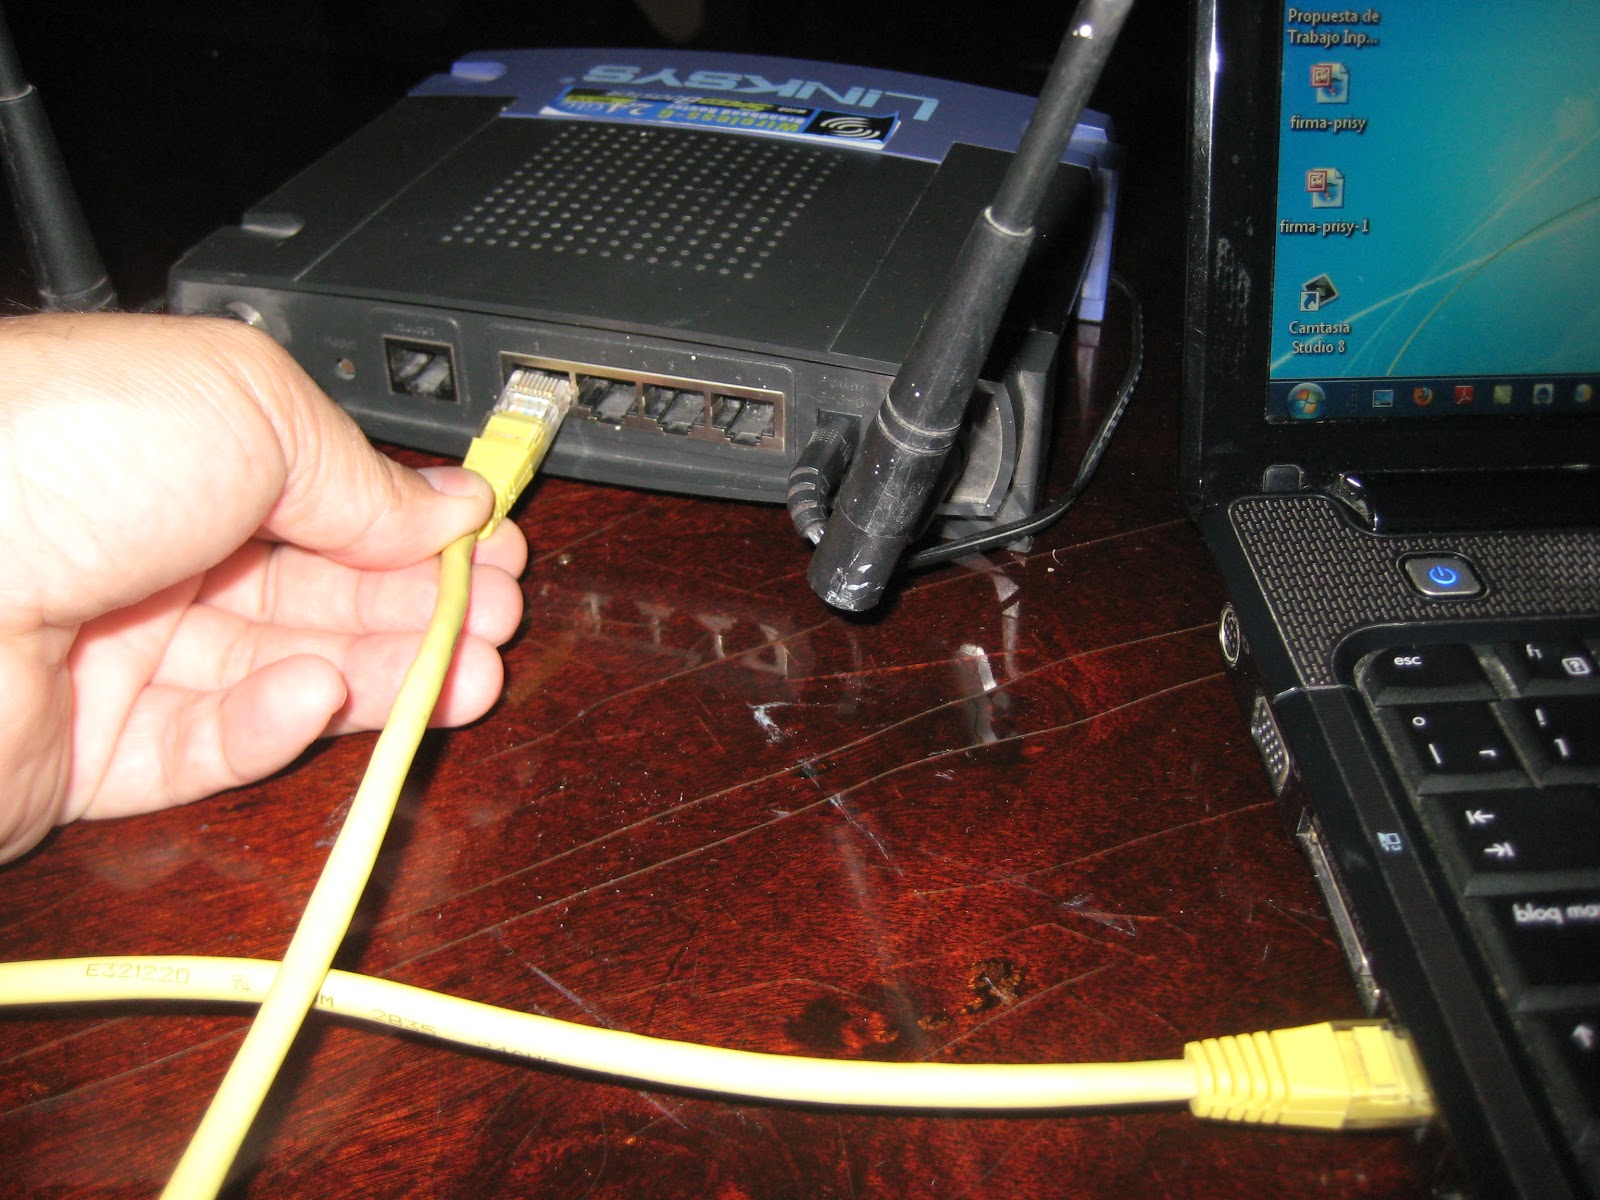 Conectar el Treo 600 a Internet/Intranet, por cable o sin cables usando el programa SoftickPPP